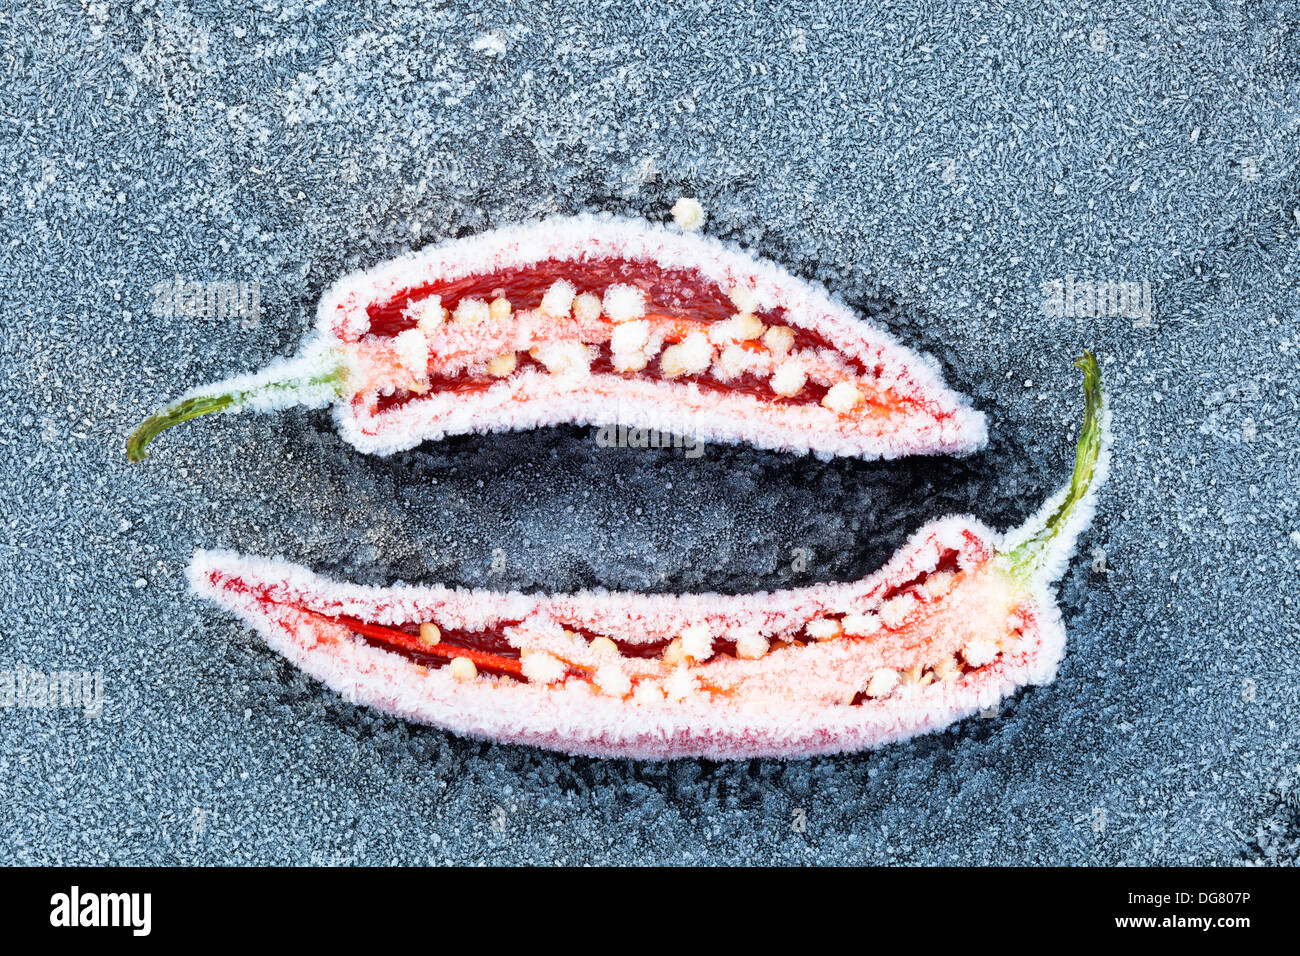 Red Hot Chili Peppers tagliata aperta che mostra i semi, congelato e coperto di brina trasformata per forte gradiente. Foto Stock